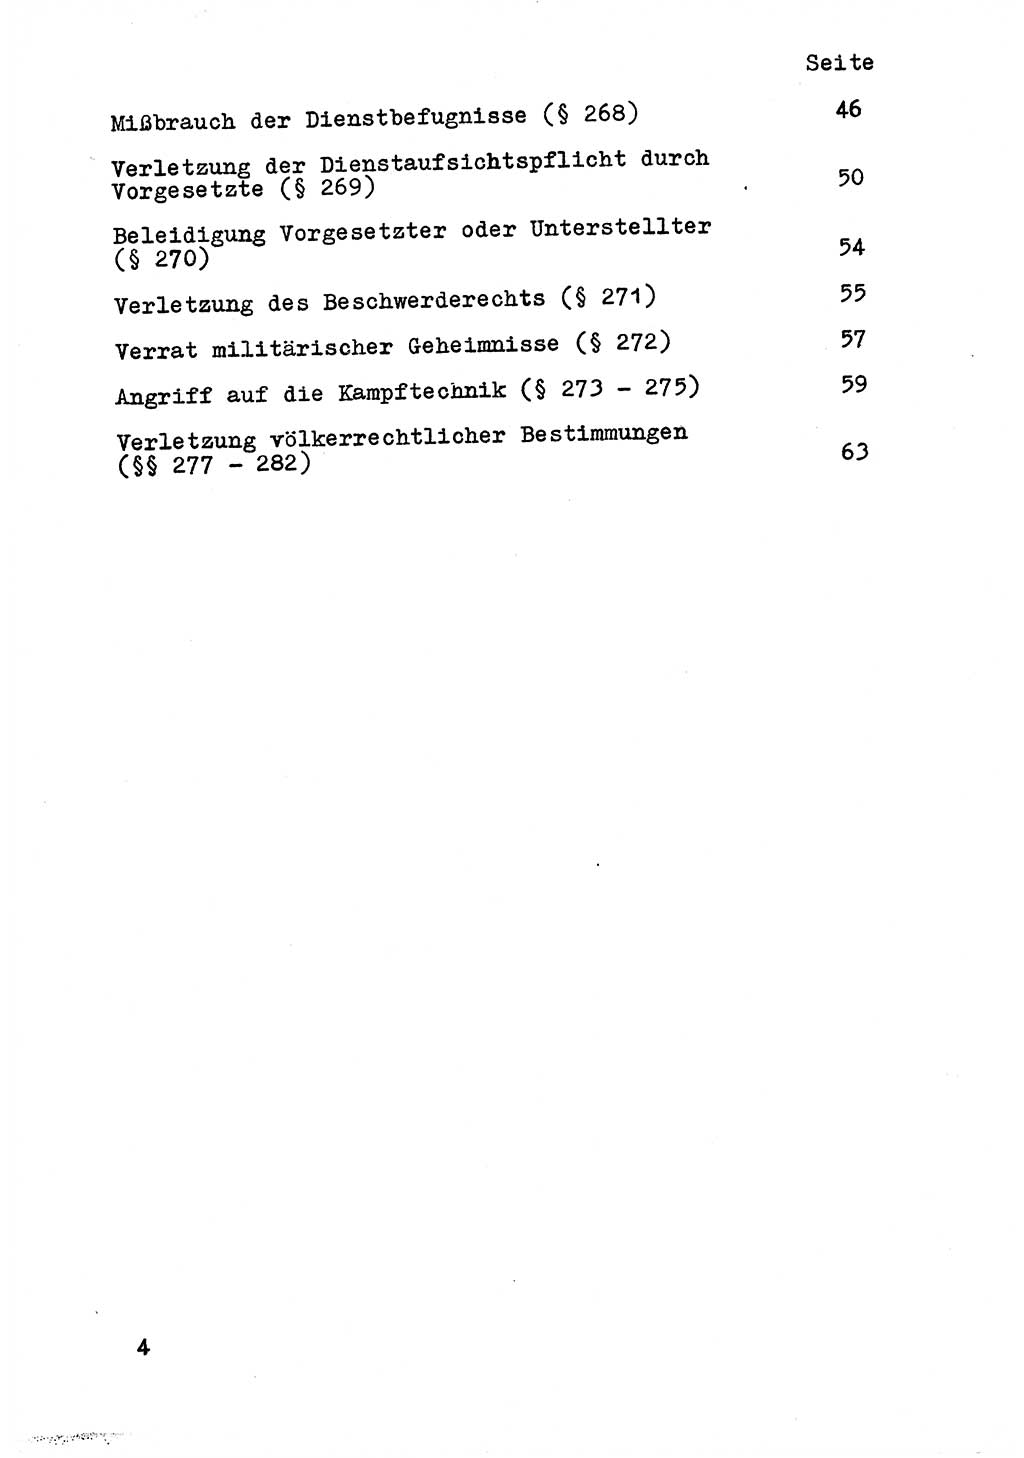 Strafrecht der DDR (Deutsche Demokratische Republik), Besonderer Teil, Lehrmaterial, Heft 9 1969, Seite 4 (Strafr. DDR BT Lehrmat. H. 9 1969, S. 4)